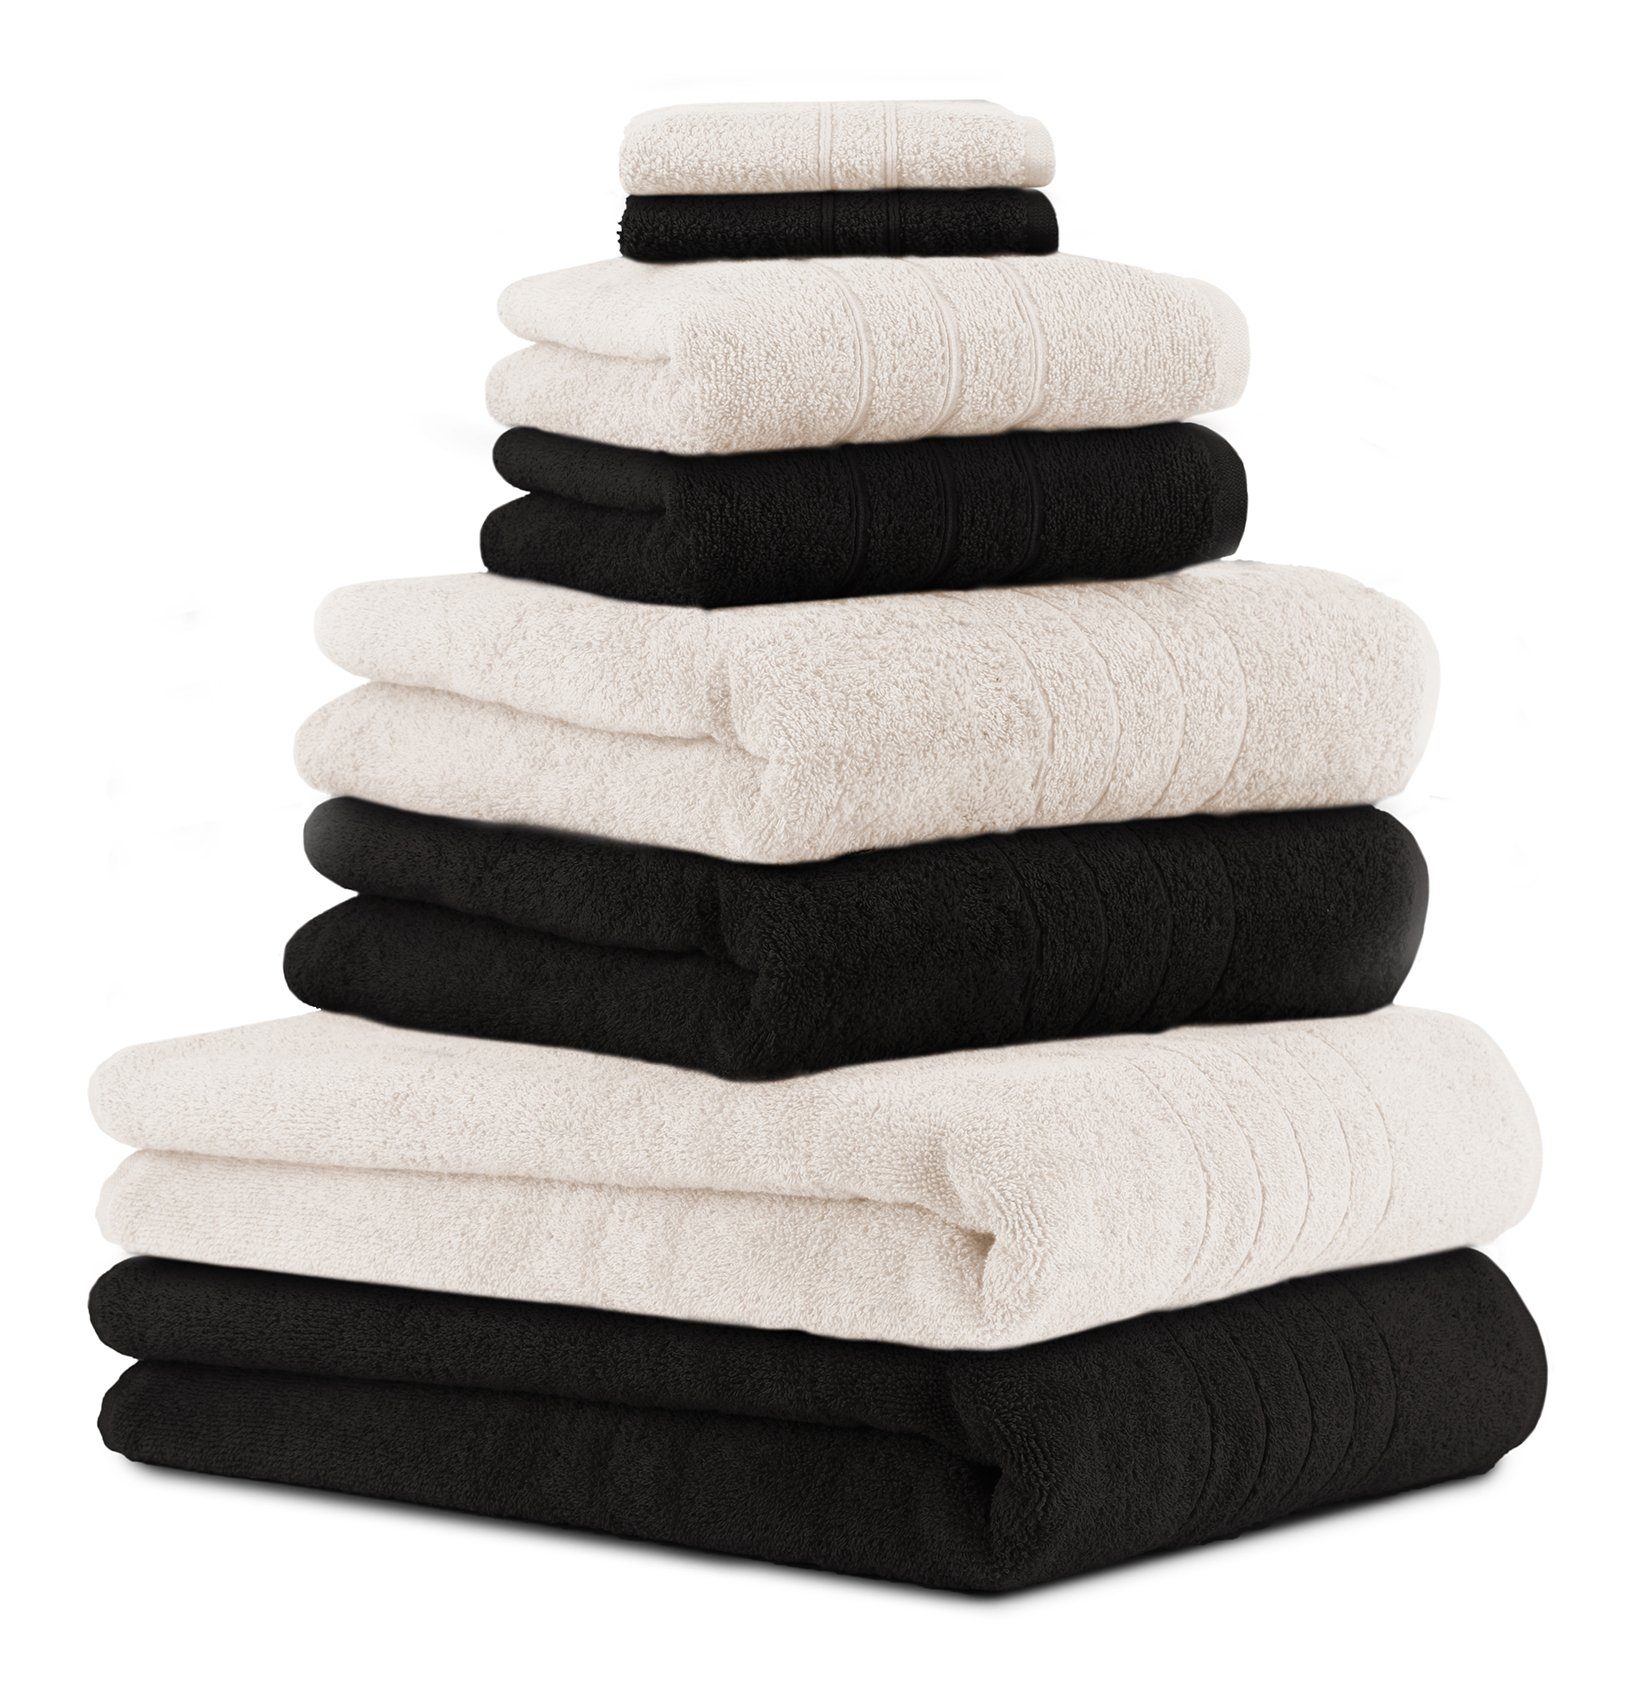 Betz Handtuch Set 8-TLG. Handtuch-Set Deluxe 100% Baumwolle 2 Badetücher 2  Duschtücher 2 Handtücher 2 Seiftücher Farbe Creme und schwarz, 100%  Baumwolle, (8-tlg)